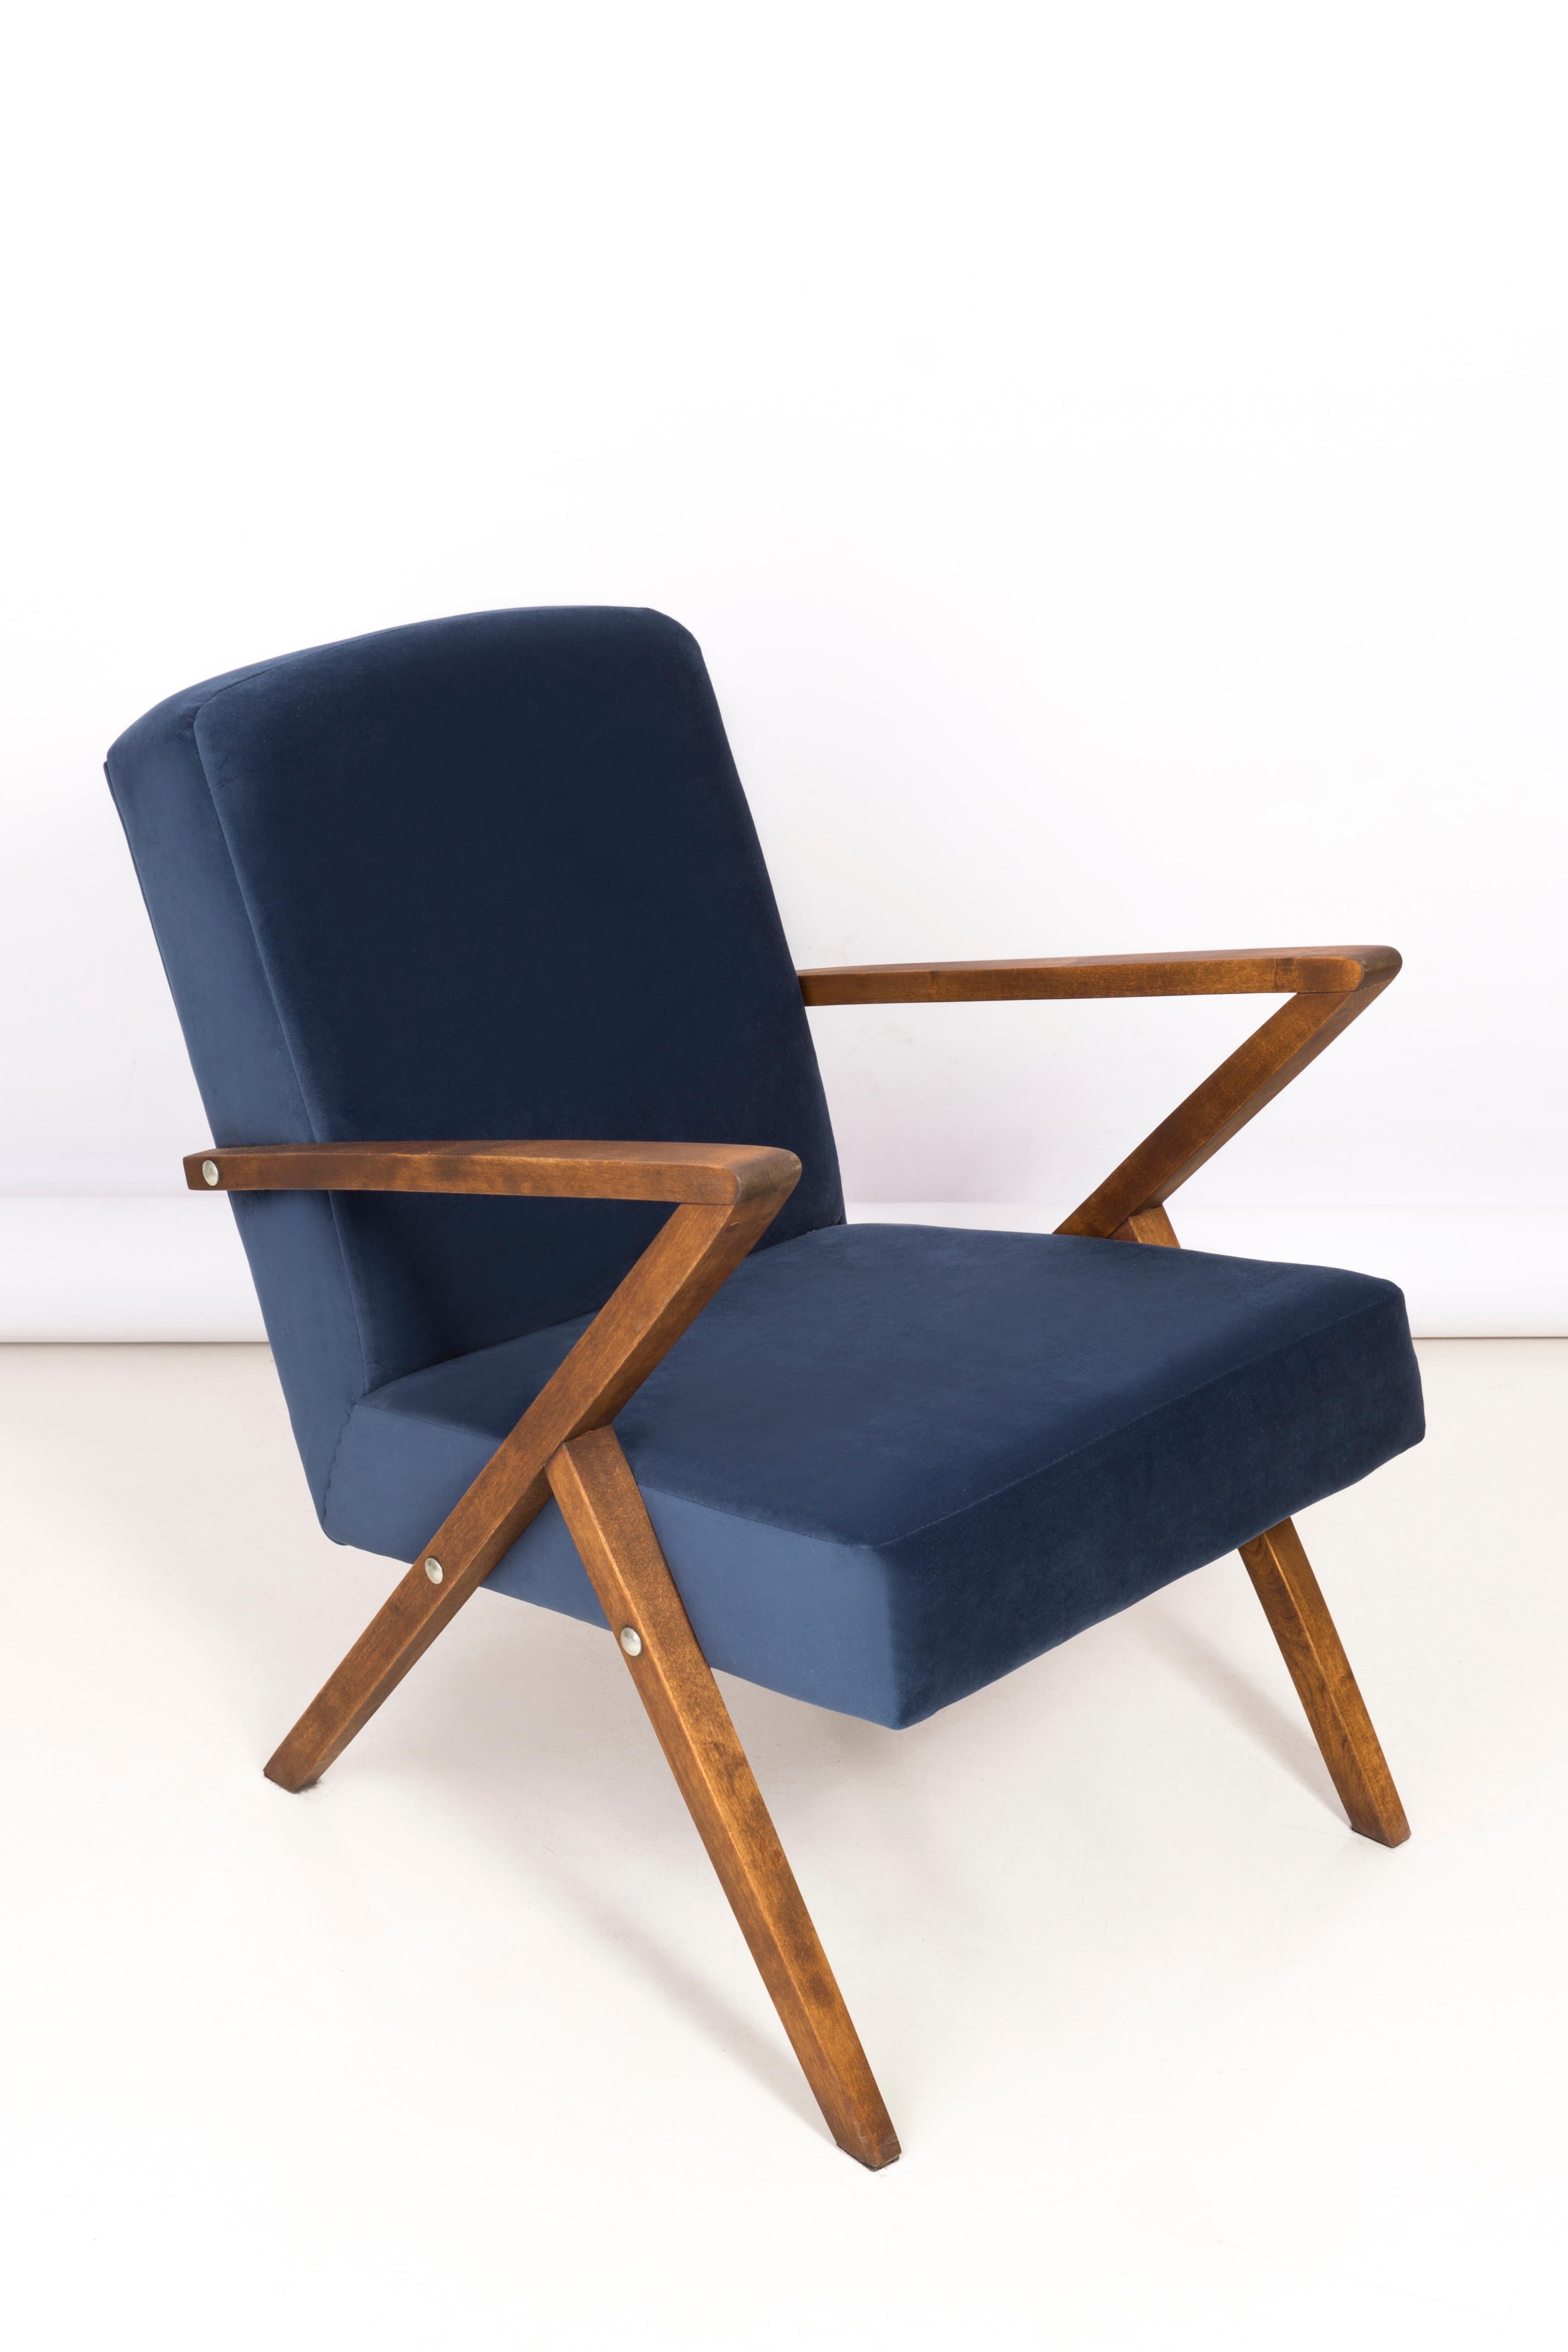 Sessel, hergestellt in der Genossenschaft für die Erneuerung von Bydgoszcz in den 1970er Jahren. Die Sessel sind nach einer umfassenden Renovierung von Tischlerarbeiten und Polsterung. Das Holz wurde gereinigt, die Hohlräume ausgefüllt, mit dunkler